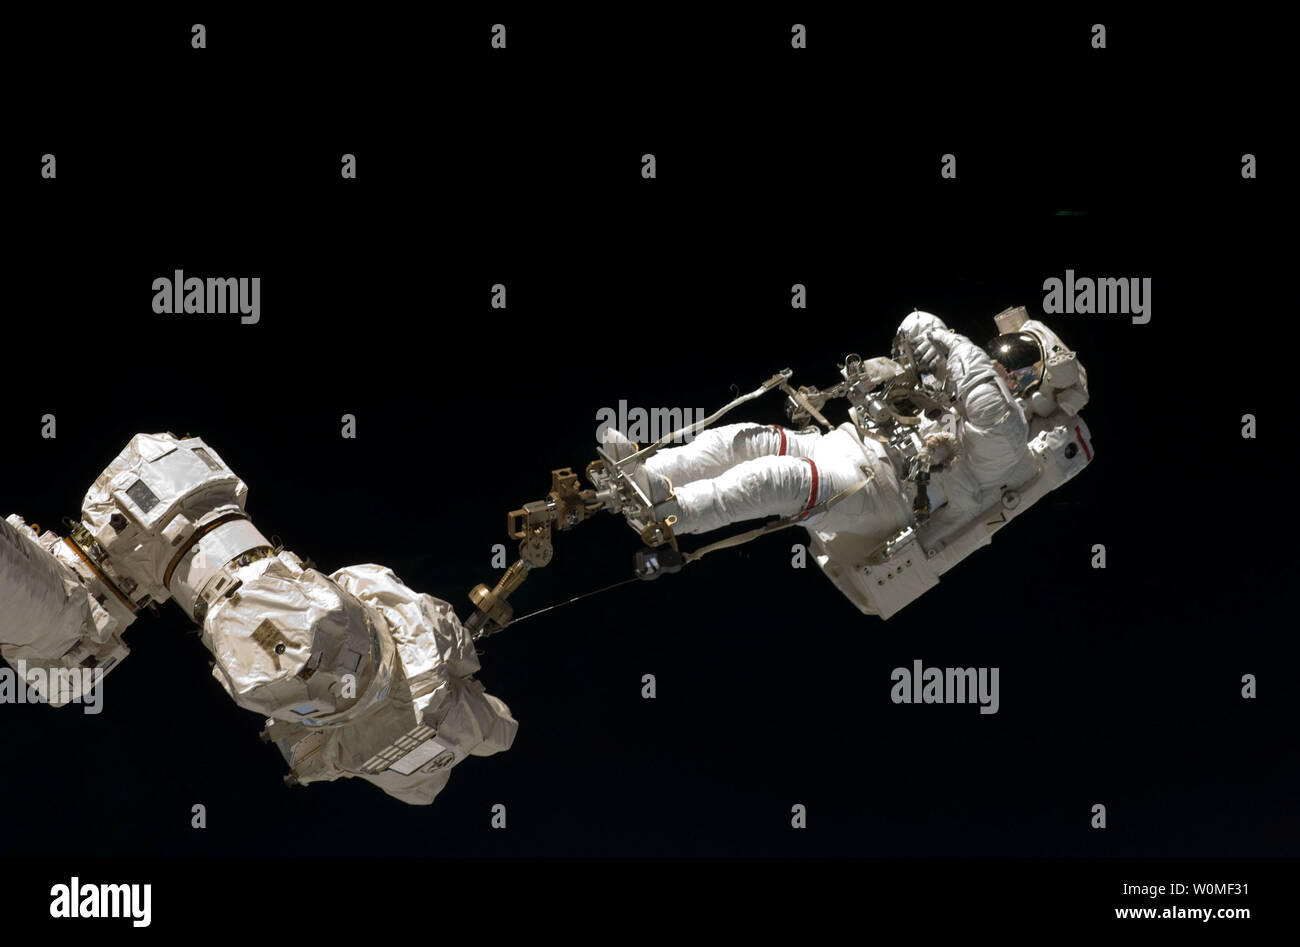 Dieser NASA Bild von den Astronauten an Bord des Space Shuttle STS-127 Enedeavour show Astronaut Dave Wolf seinen zweiten Außenbordeinsatz der Mission festgelegt, fünf insgesamt, während er weiterhin auf der Internationalen Raumstation zu arbeiten. Astronauten Wolf und Tom Marshburn (aus dem Frame), beide mission Specialists, erfolgreich übertragen ein Ersatzteil KU-Band Antenne zur langfristigen Lagerung auf der Raumstation, zusammen mit einem Backup Kühlsystem pumpenmodul und ein Reservelaufwerk Motor für Roboterarm Transporter der Station, 20. Juli 2009. Bemühen und Ihr 7-Mann Crew sind auf einer 16-tägigen Service Mission an die I Stockfoto